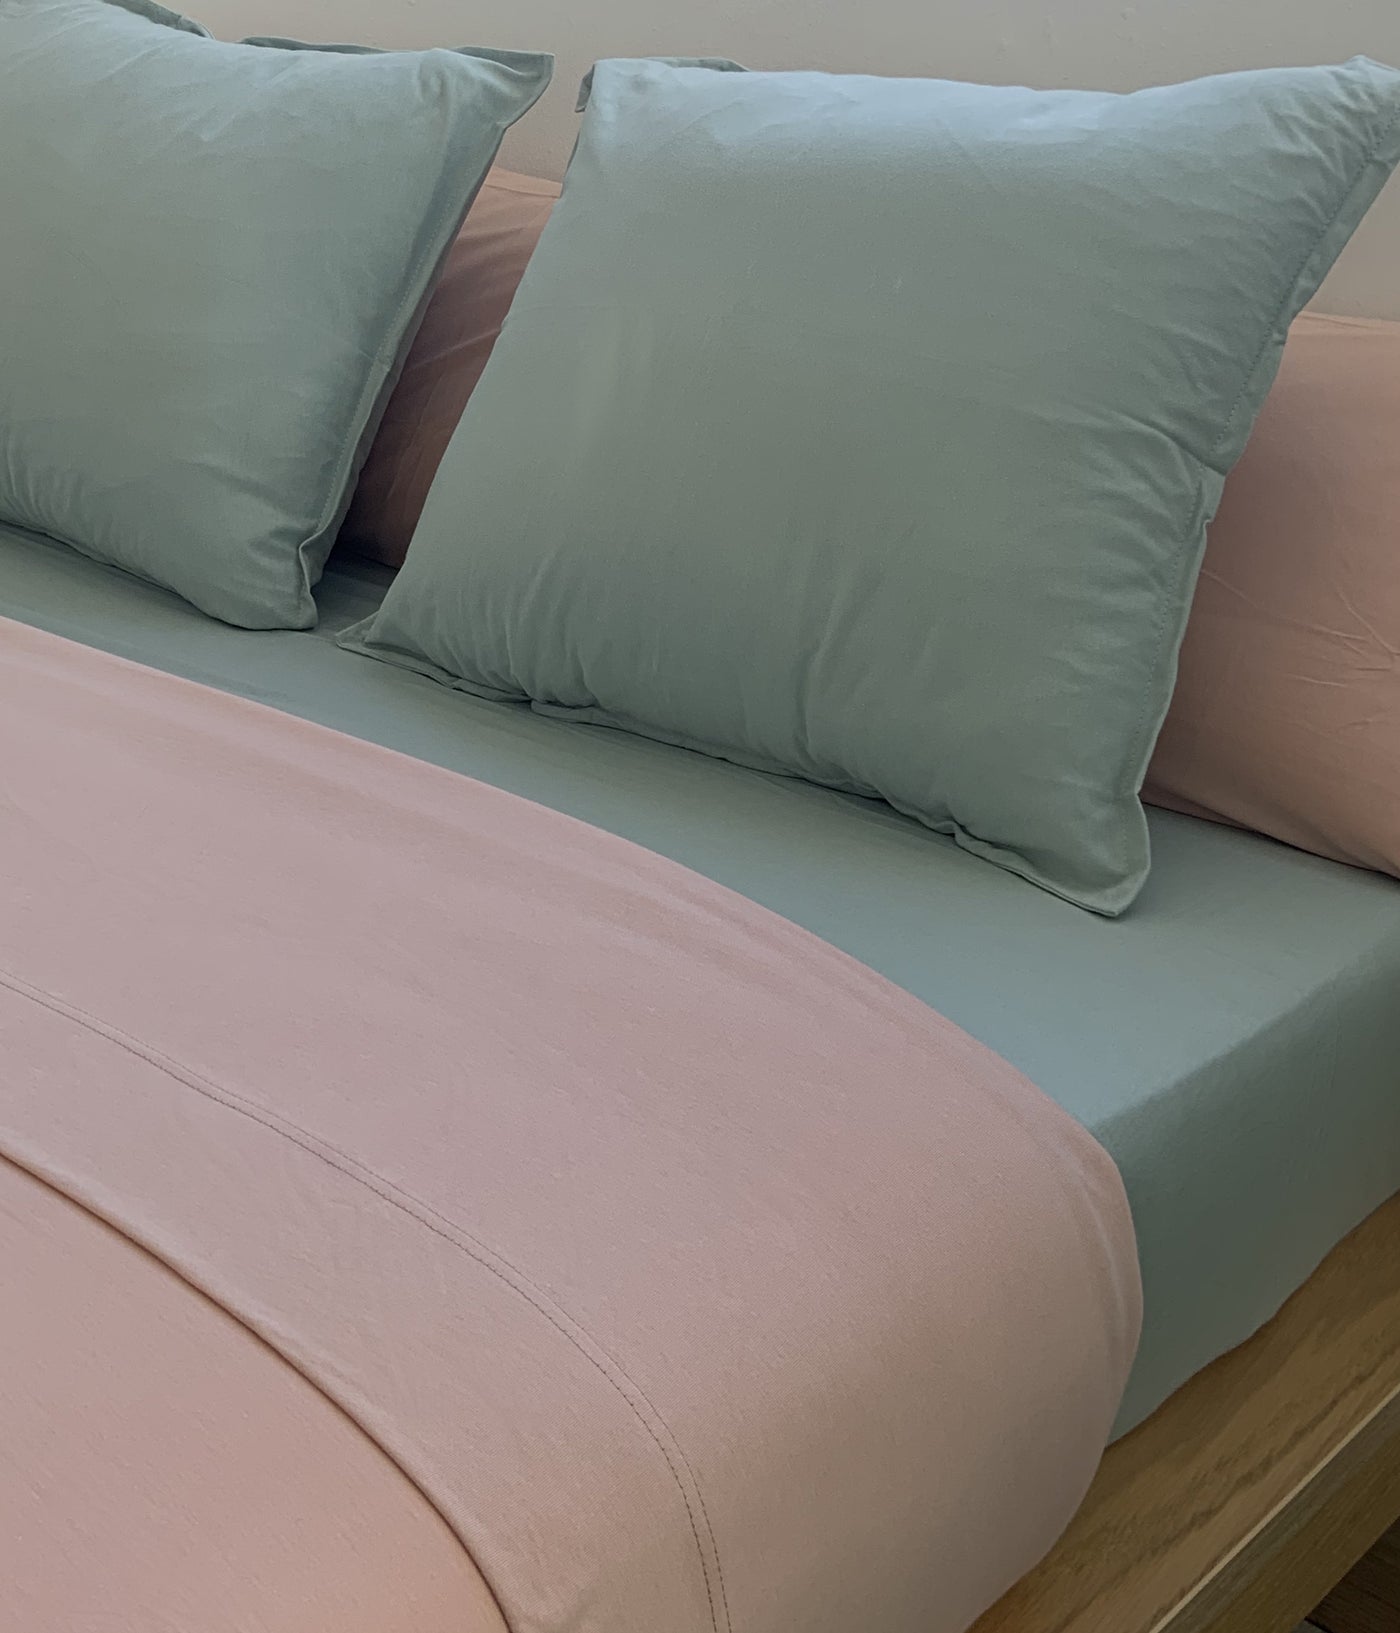 Basic Pink Flat sheet